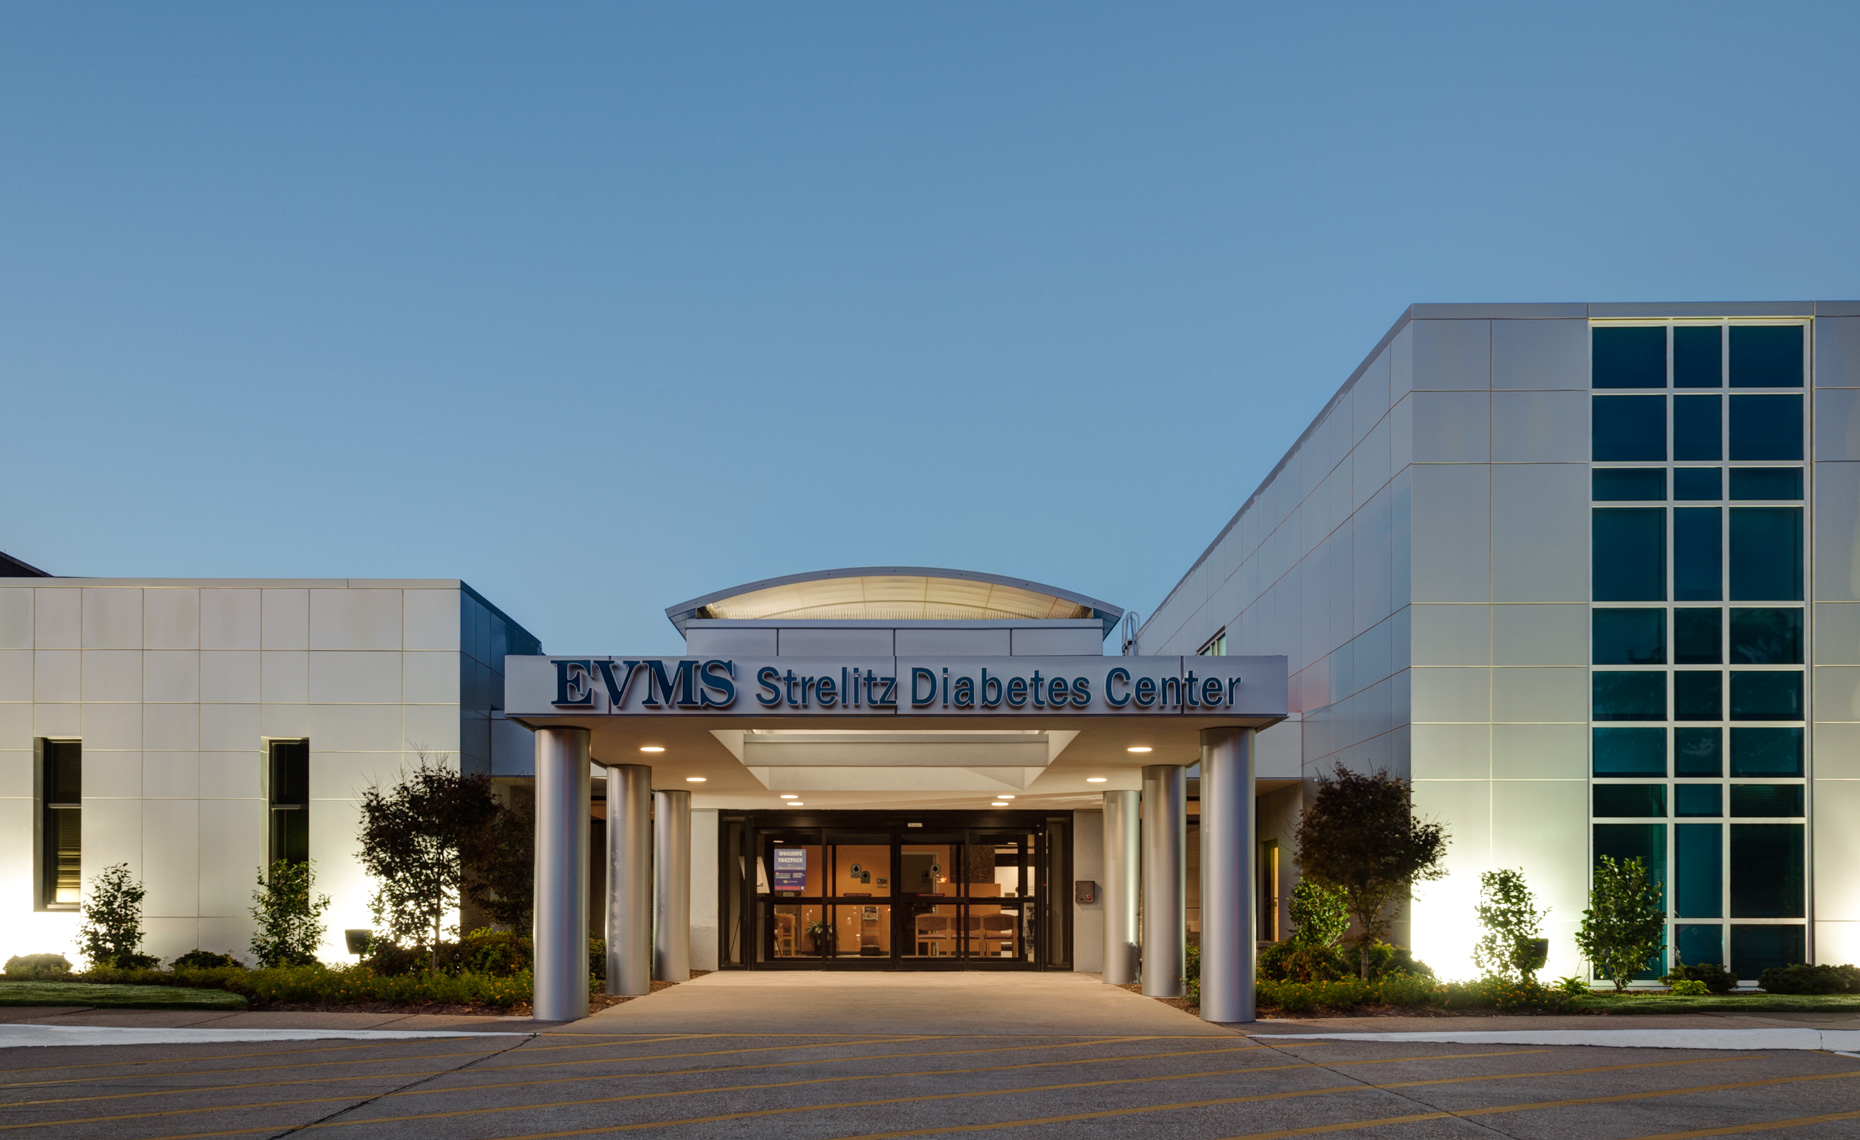 EVMS Strelitz Diabetes Center